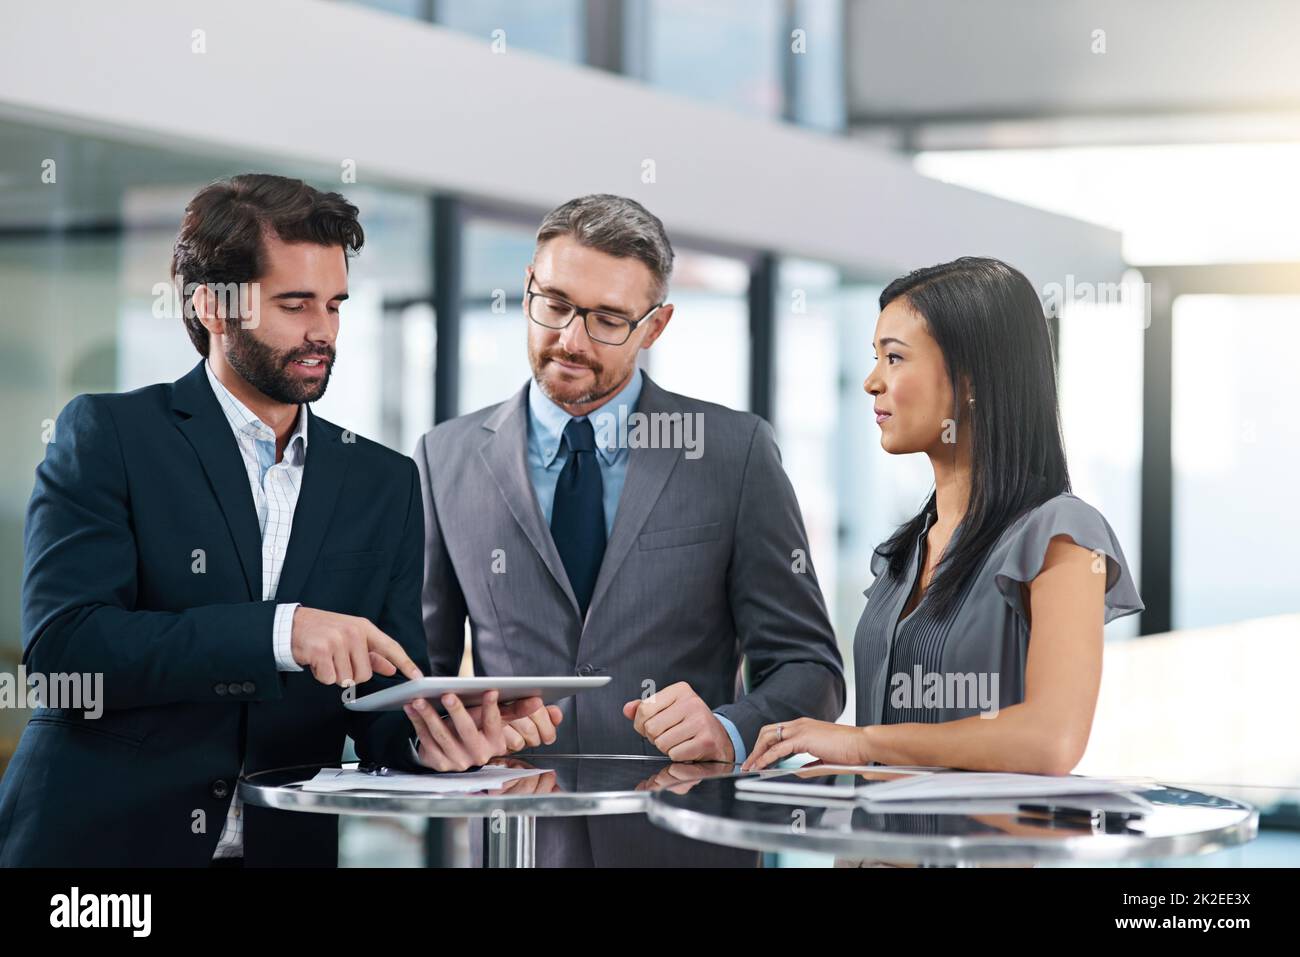 Lassen Sie sie einen Vorgeschmack bekommen. Eine kurze Aufnahme einer Gruppe von Geschäftsleuten, die im Büro über ein digitales Tablet schauten. Stockfoto